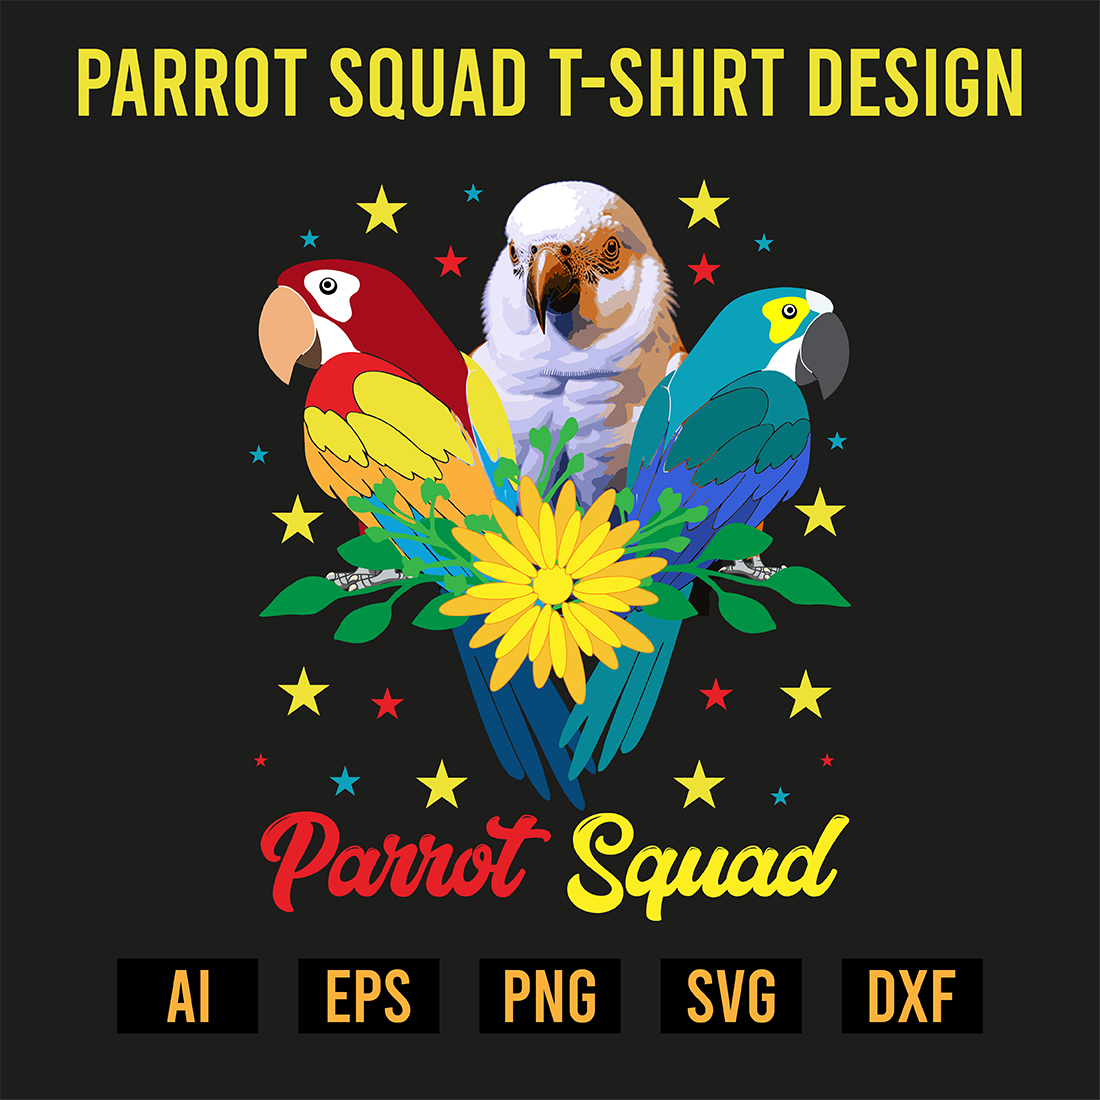 Parrot Squad T-Shirt Design preview image.